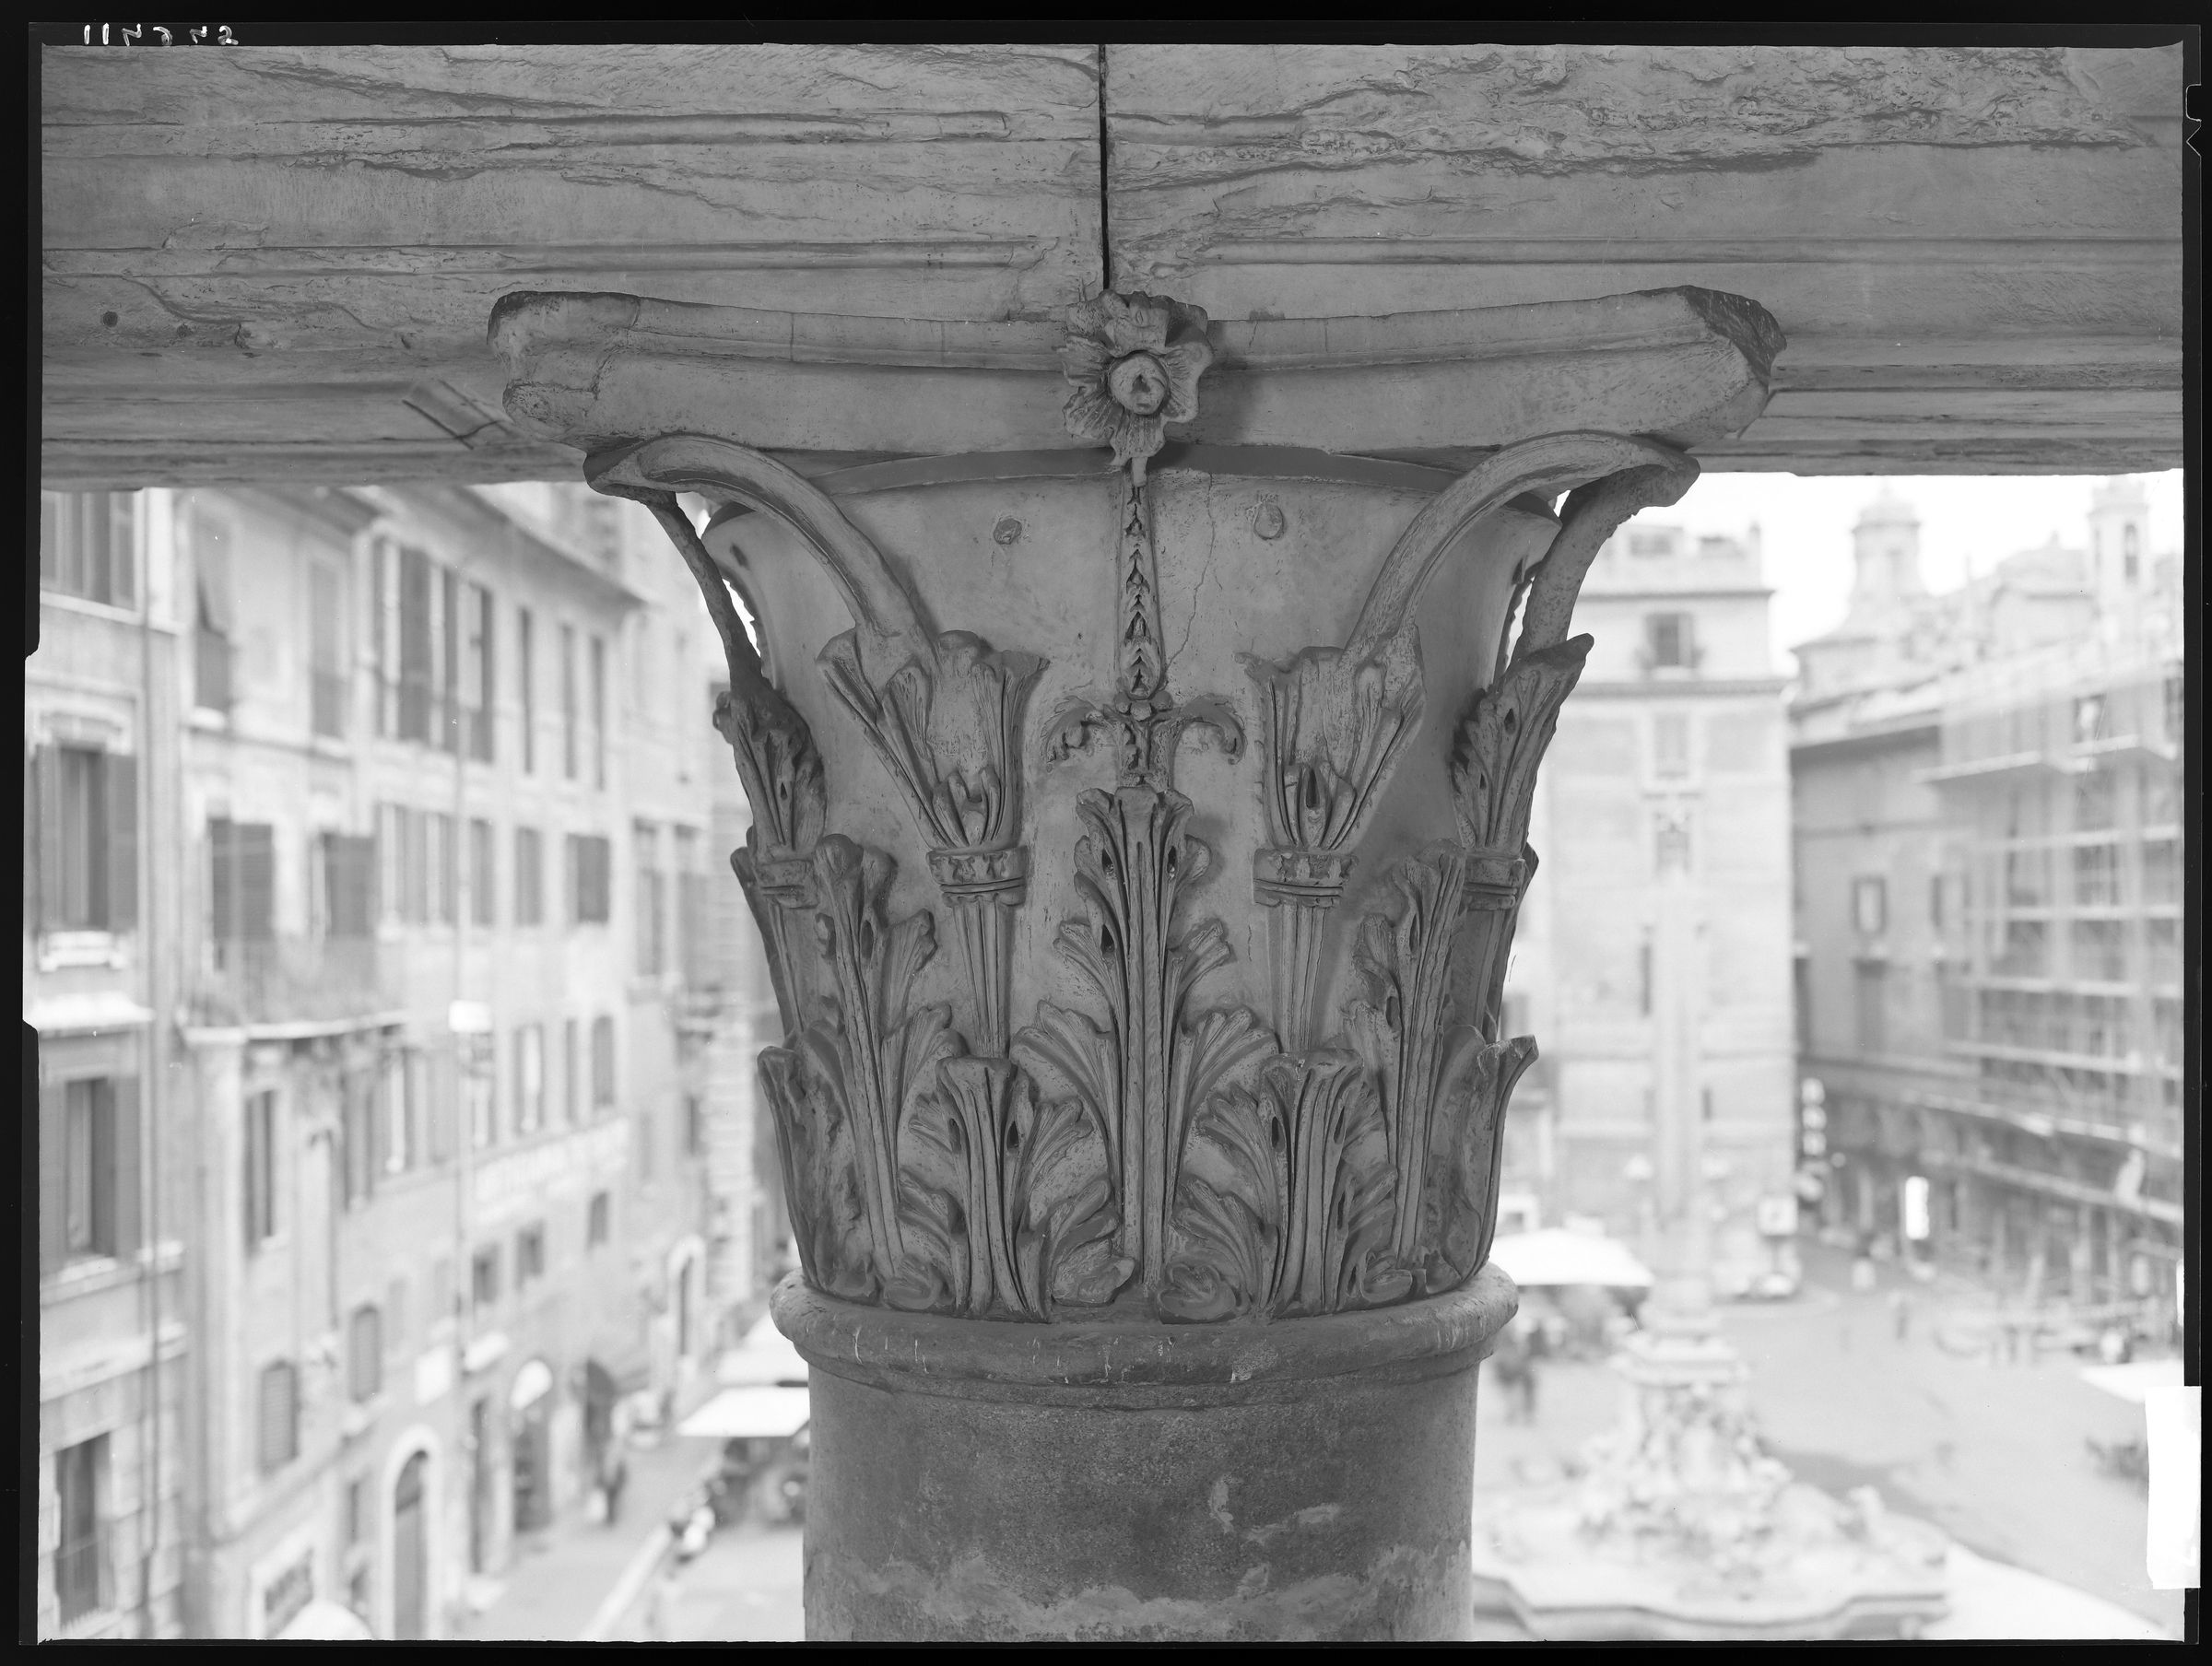 Fotografo non identificato, Roma - Pantheon,1951-2000, 18x24 cm, E114945